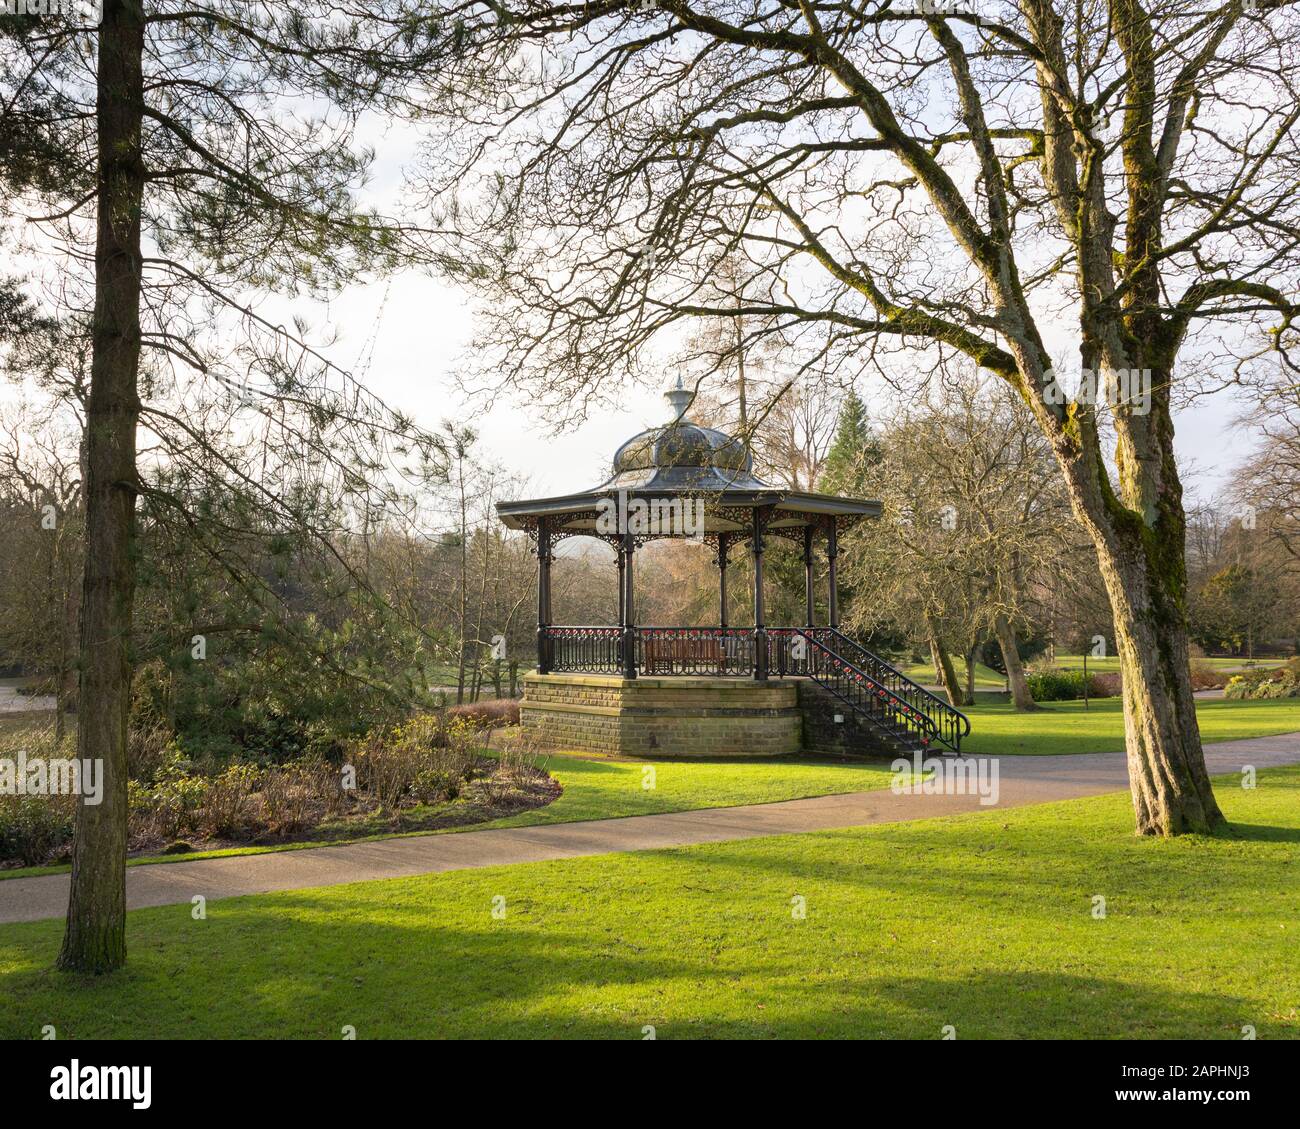 Buxton, Derbyshire, Peak District, UK: La bandstand vittoriana Don Redfern nei Pavilion Gardens è usata da bande locali di ottone. Foto Stock